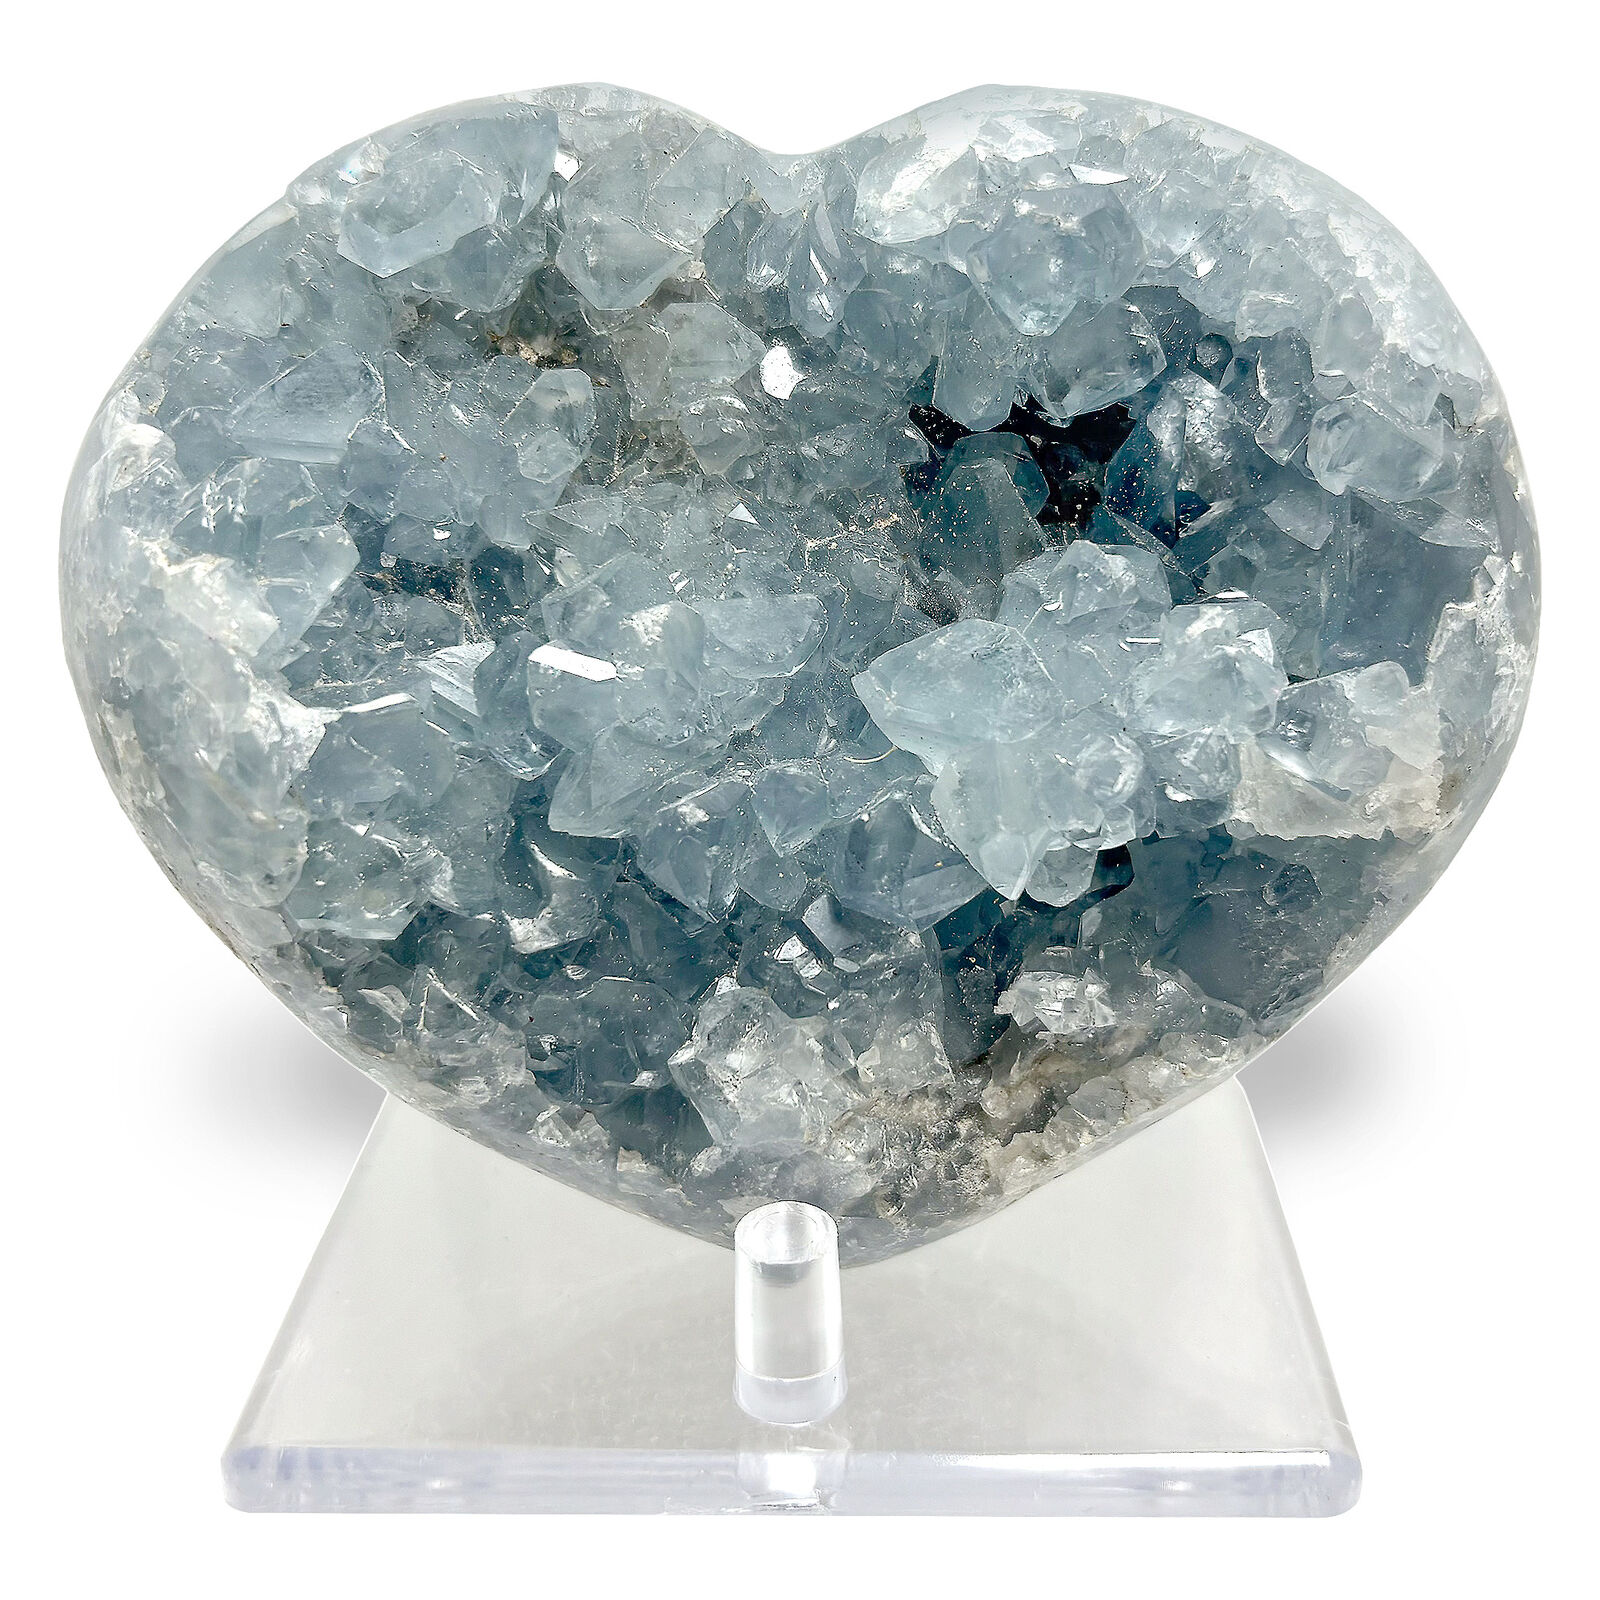 Natural Heart Shaped Celestite Gemstone Crystal Cluster Geode Specimen 2.2 Lb